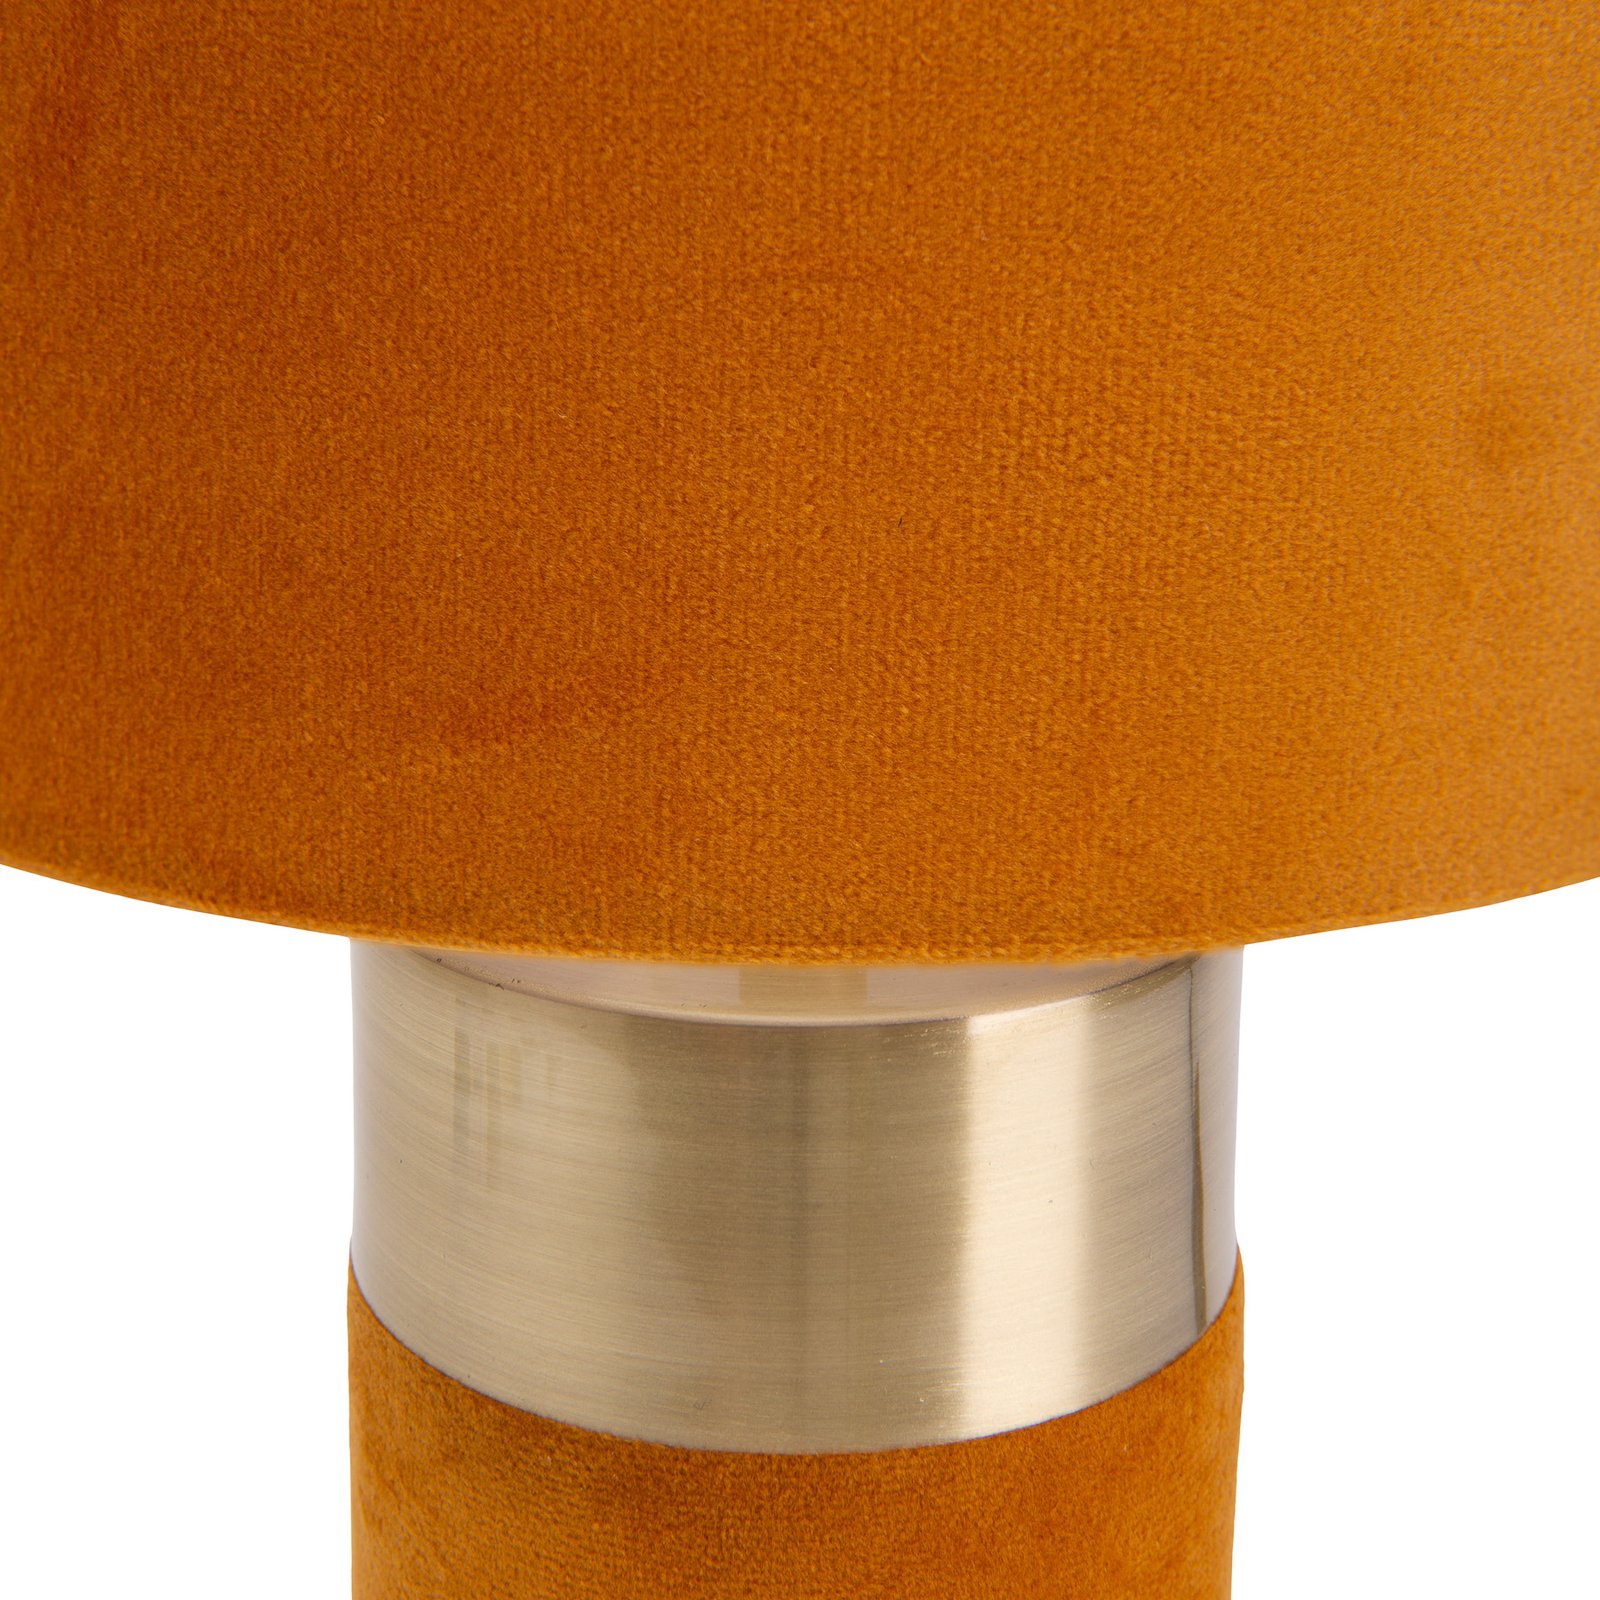 lámpa 3189514, textil ernyő, narancs